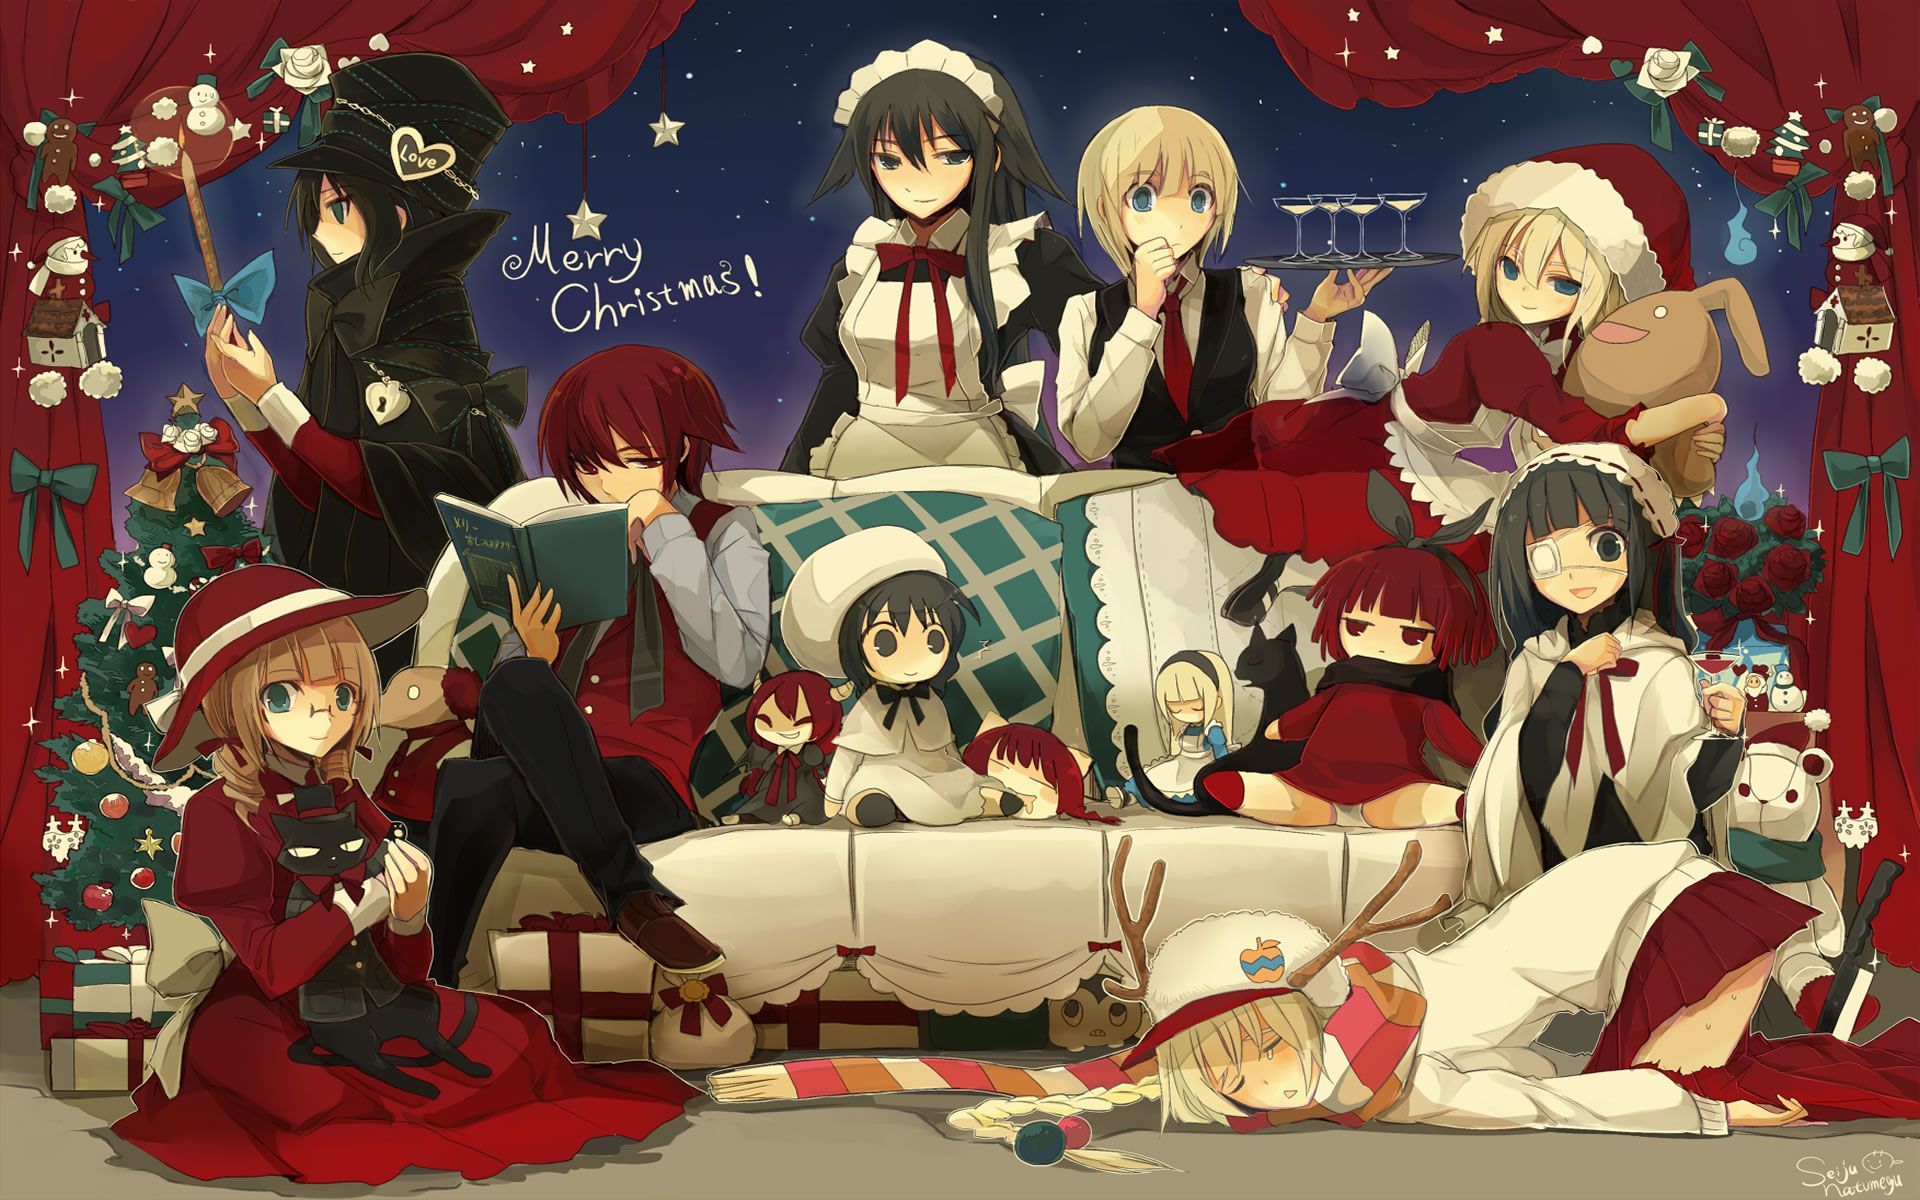 Christmas Anime Scene High Quality Wallpaper Yqufm Free.jpeg (1920×1200). Anime, Christmas Wallpaper Hd, Anime Wallpaper